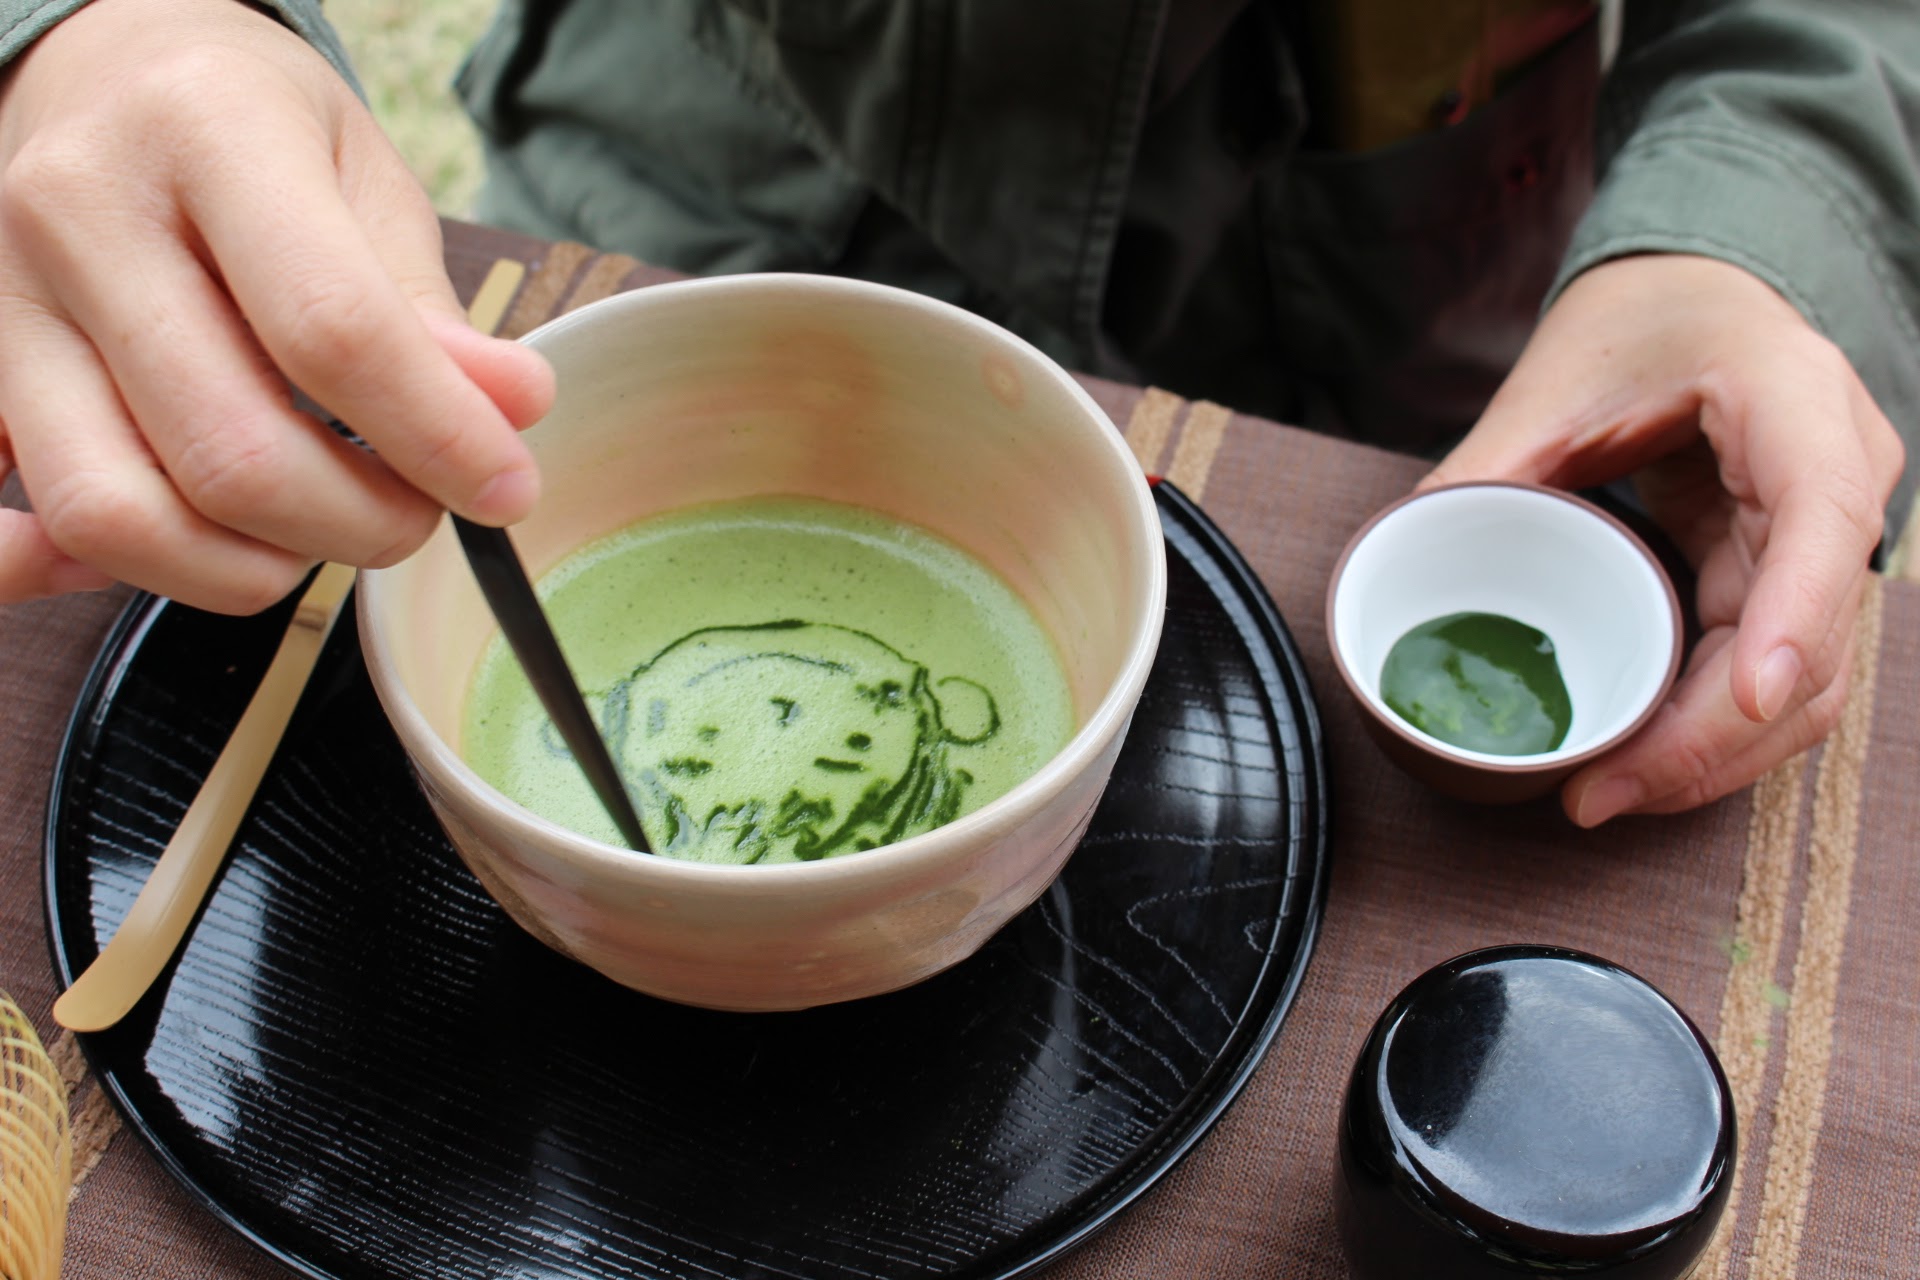 15：00 － 18：00 京都抹茶聞名海外，由取得日本茶藝資格的吉田惠美導師介紹京都地區抹茶及親身體驗抹茶拉花藝術。